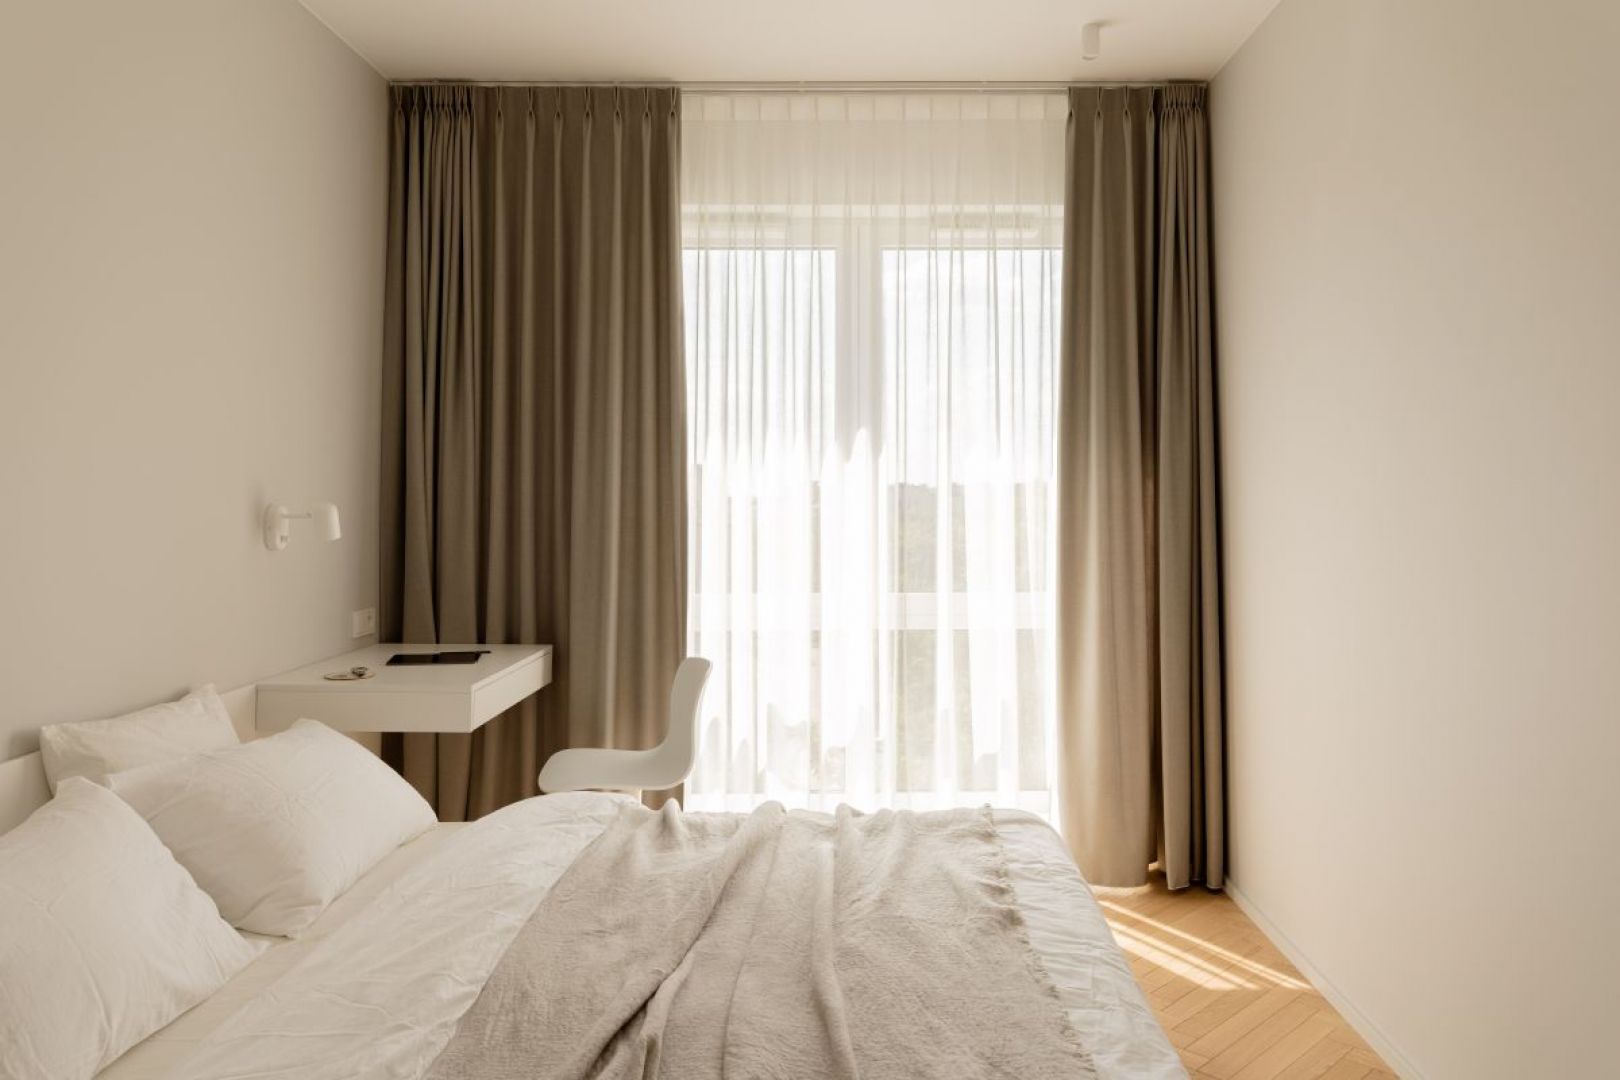 Jasną, wygodną sypialnię utrzymano w odcieniach bieli i beży. Projekt wnętrza: 3XEL Architekci. Fot. PORA studio